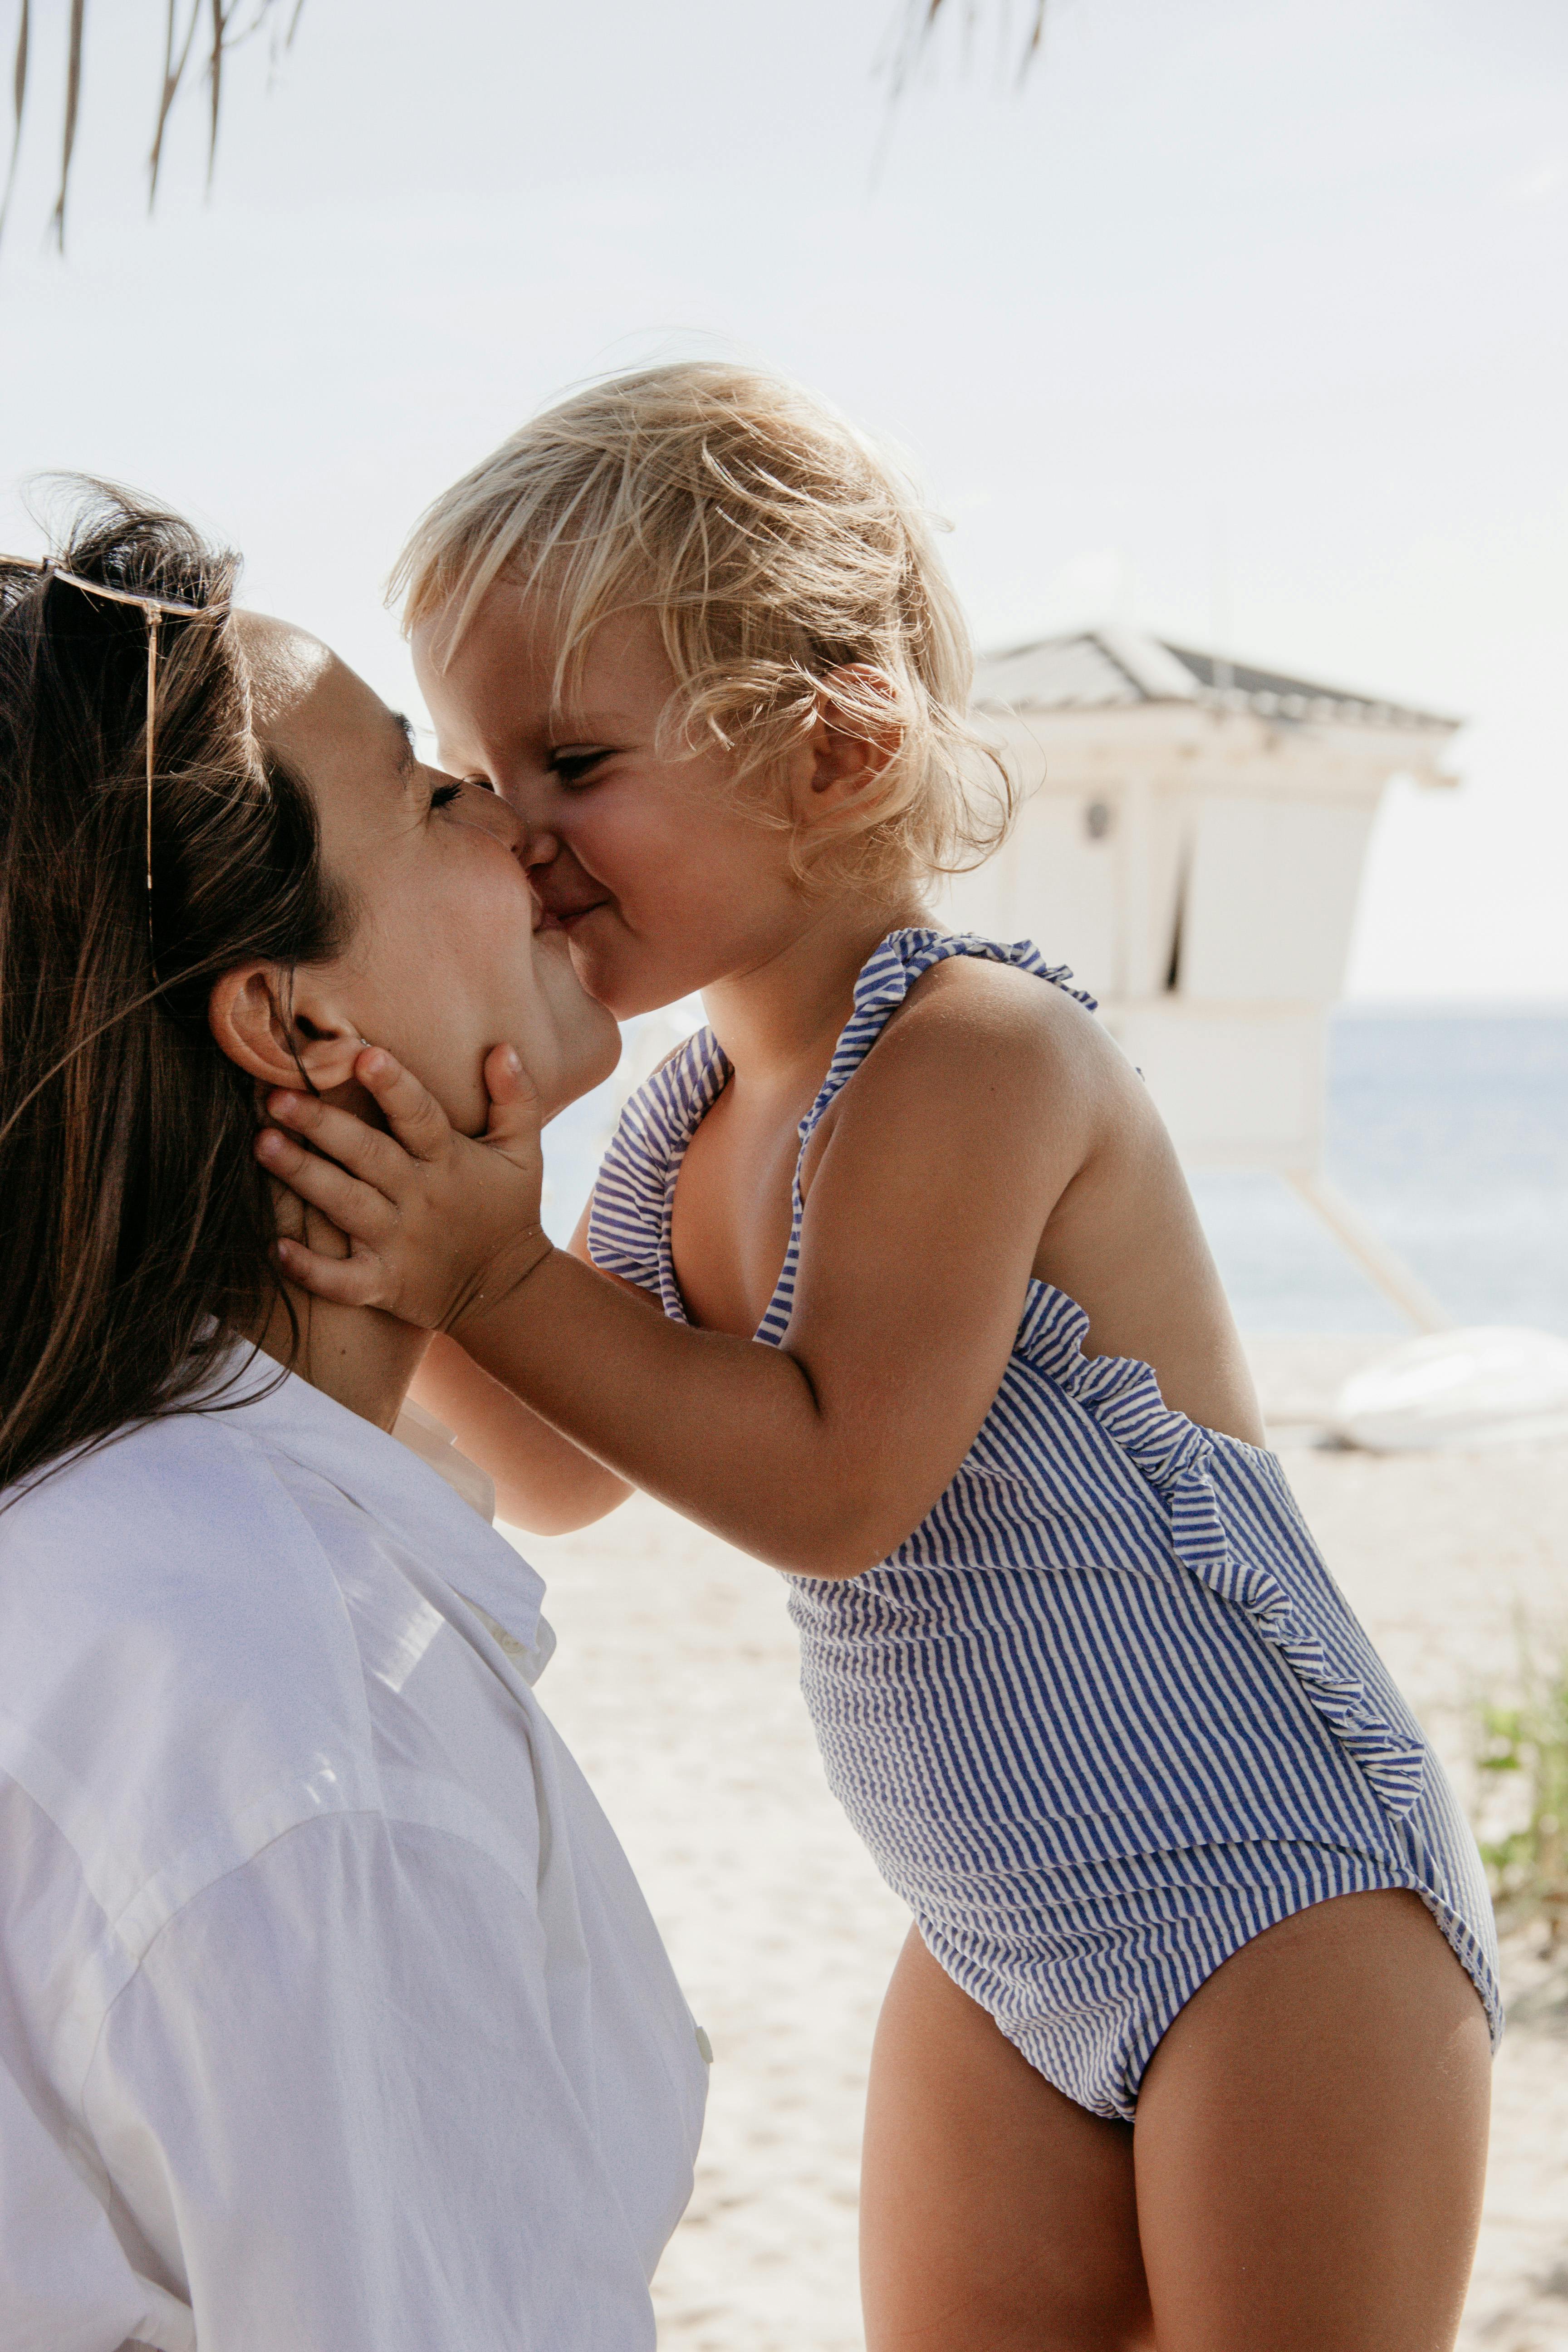 Une petite fille embrassant sa mère sur les lèvres | Source : Pexels